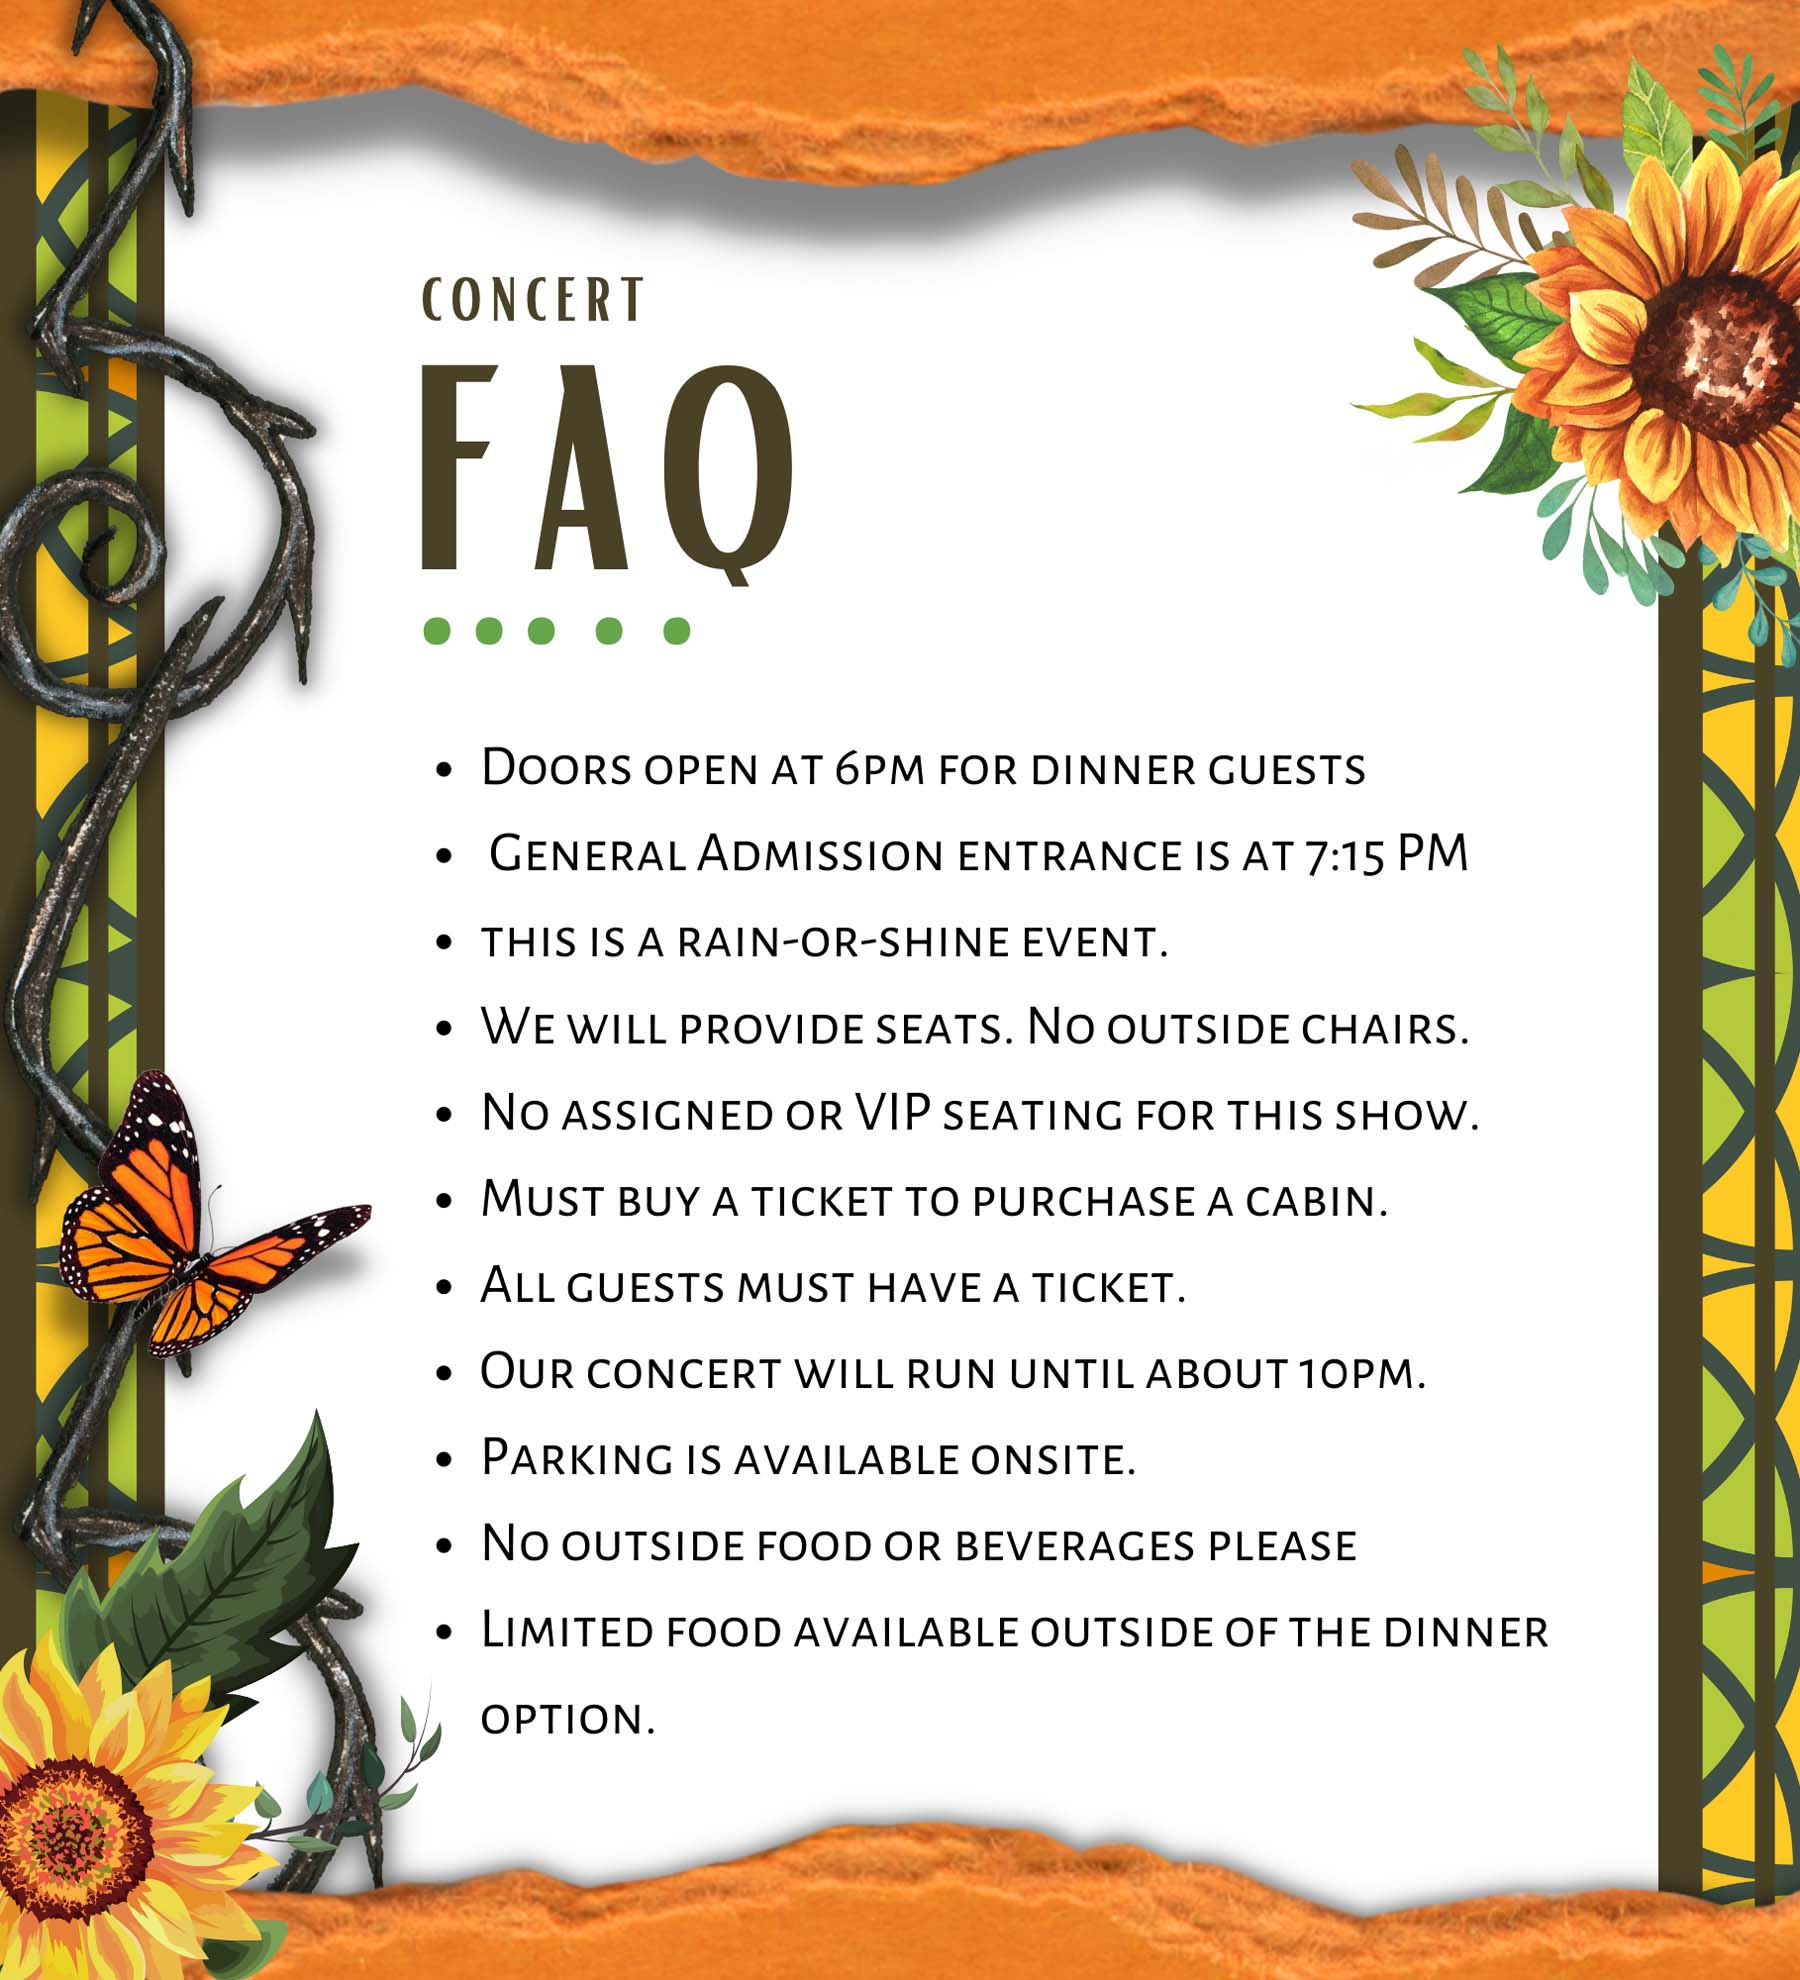 Concert FAQ